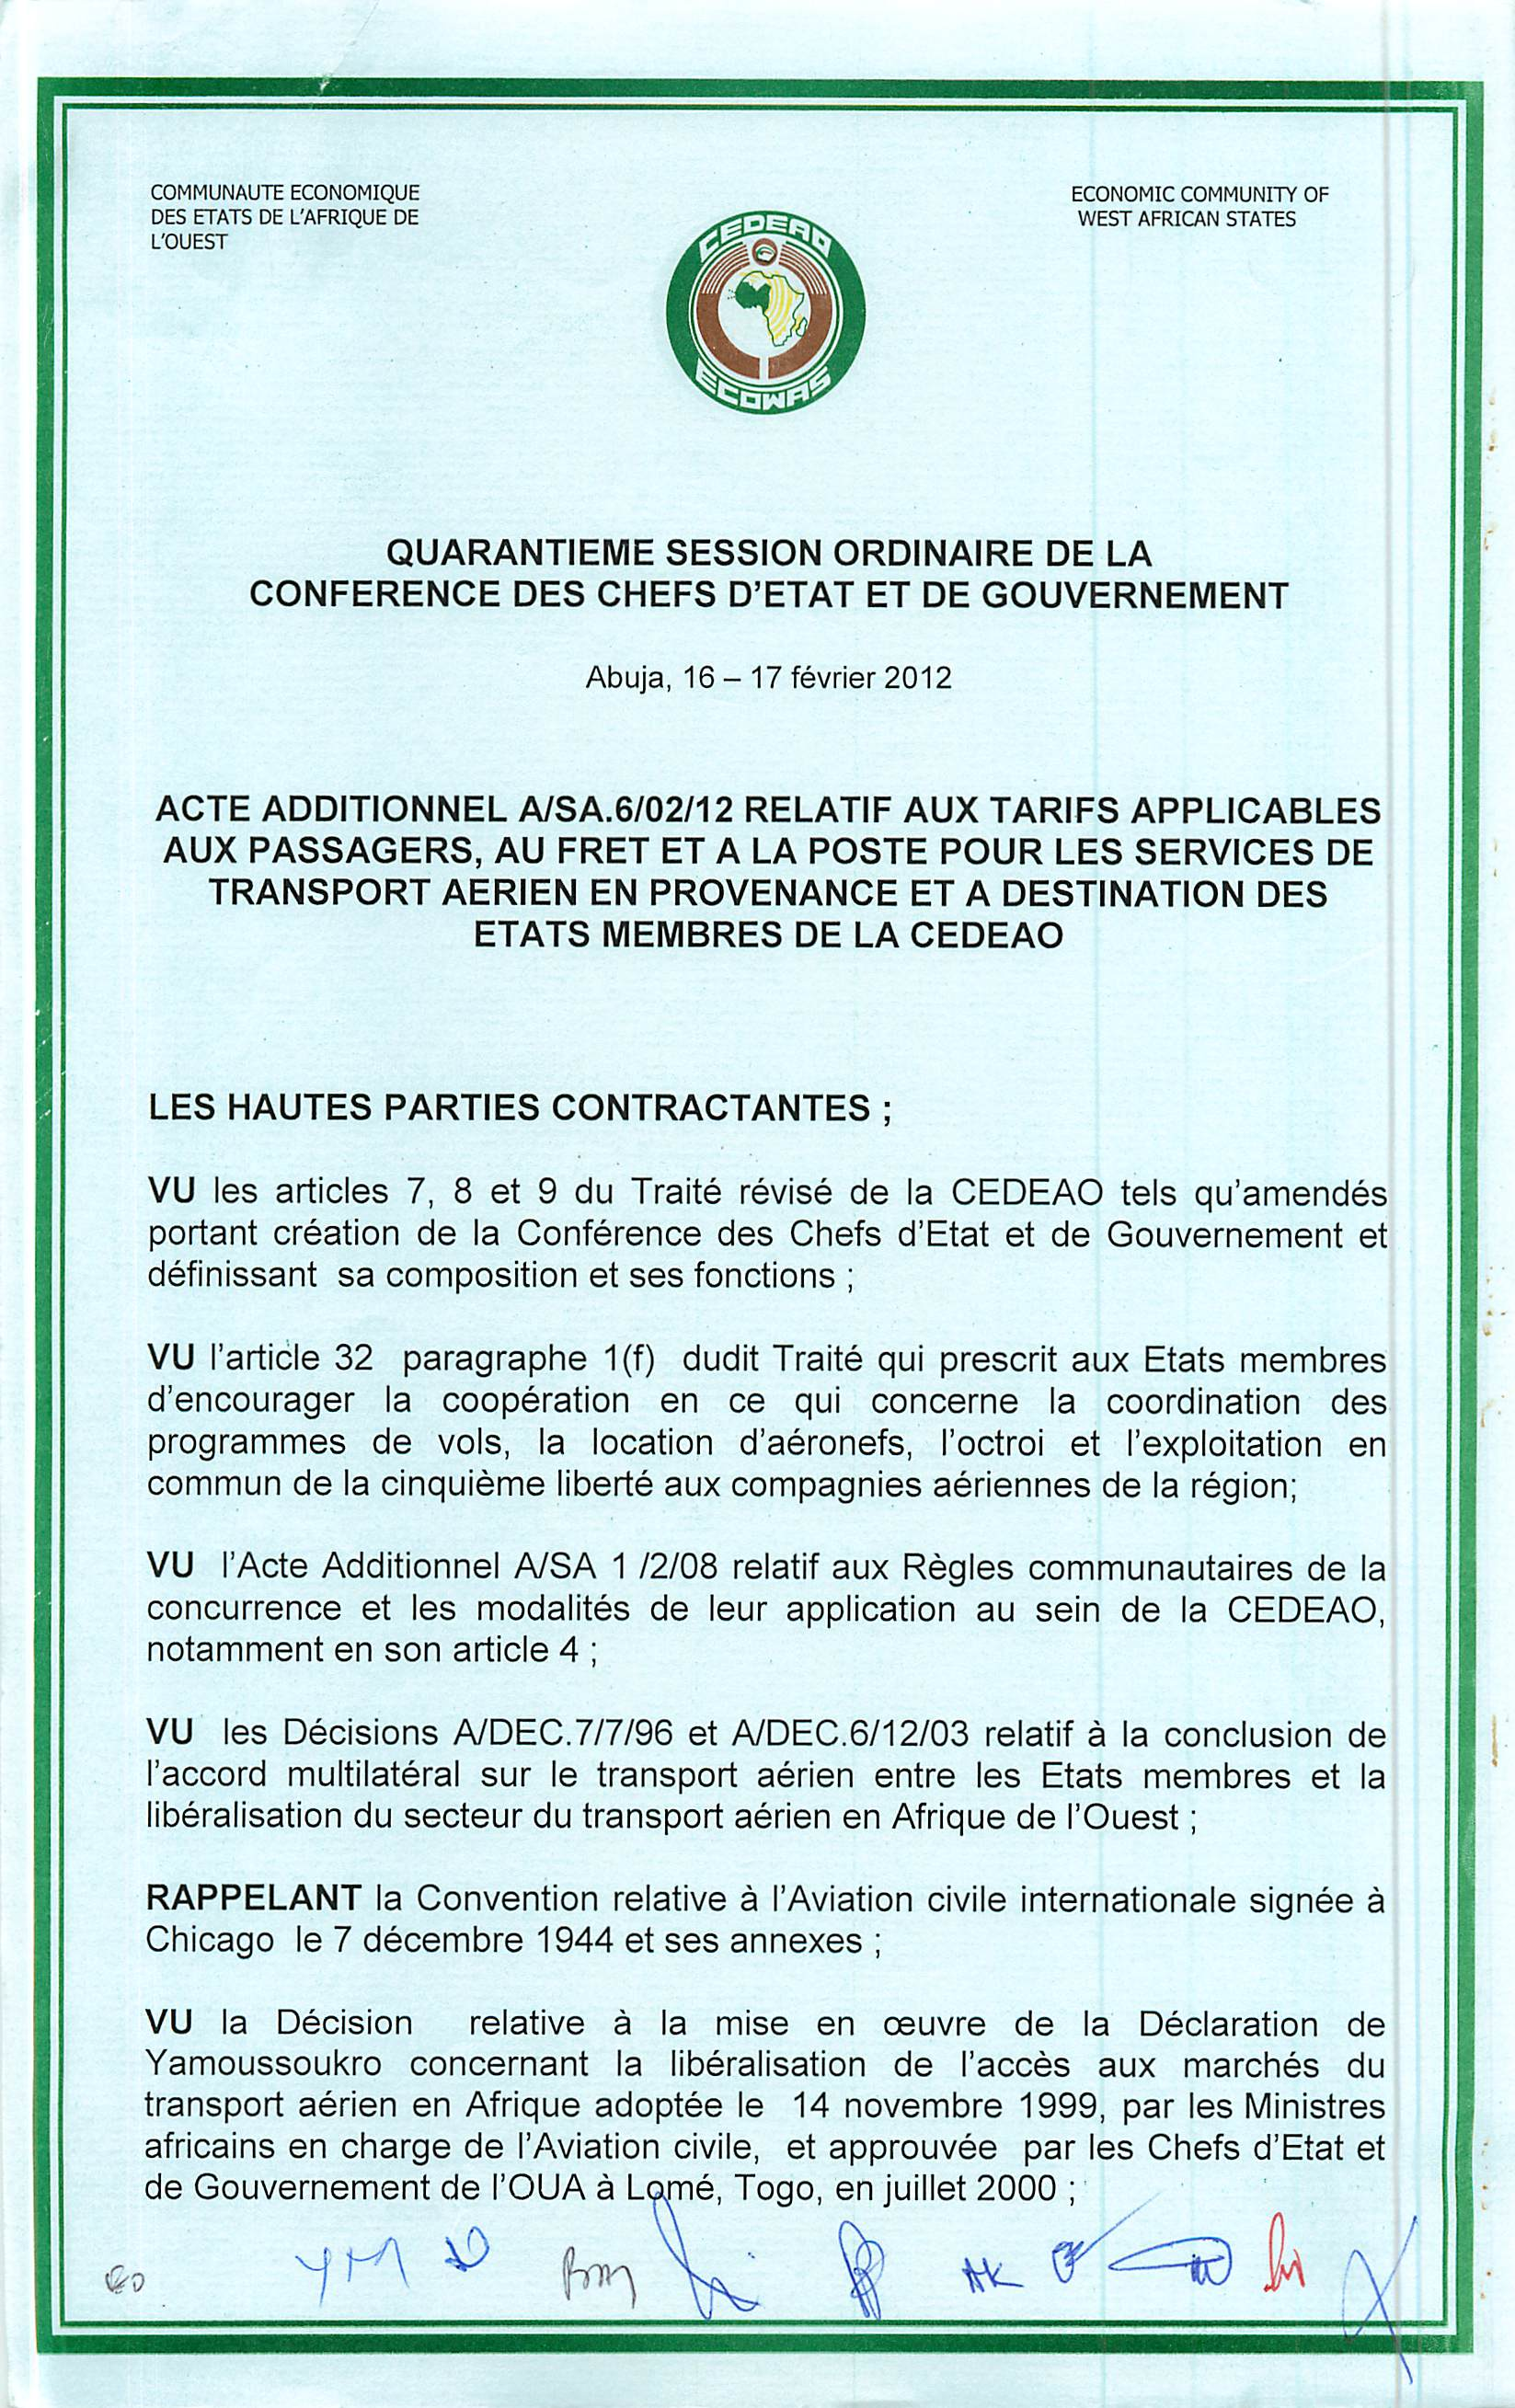 COMMUNAUTE ECONOMIQUE ECONOMIC COMMUNITY OF DES ETATS DE L'AFRIQUE DE ^^T^^ WEST AFRICAN STATES L'OUEST QUARANTIEME SESSION ORDINAIRE DE LA CONFERENCE DES CHEFS D'ETAT ET DE GOUVERNEMENT Abuja,